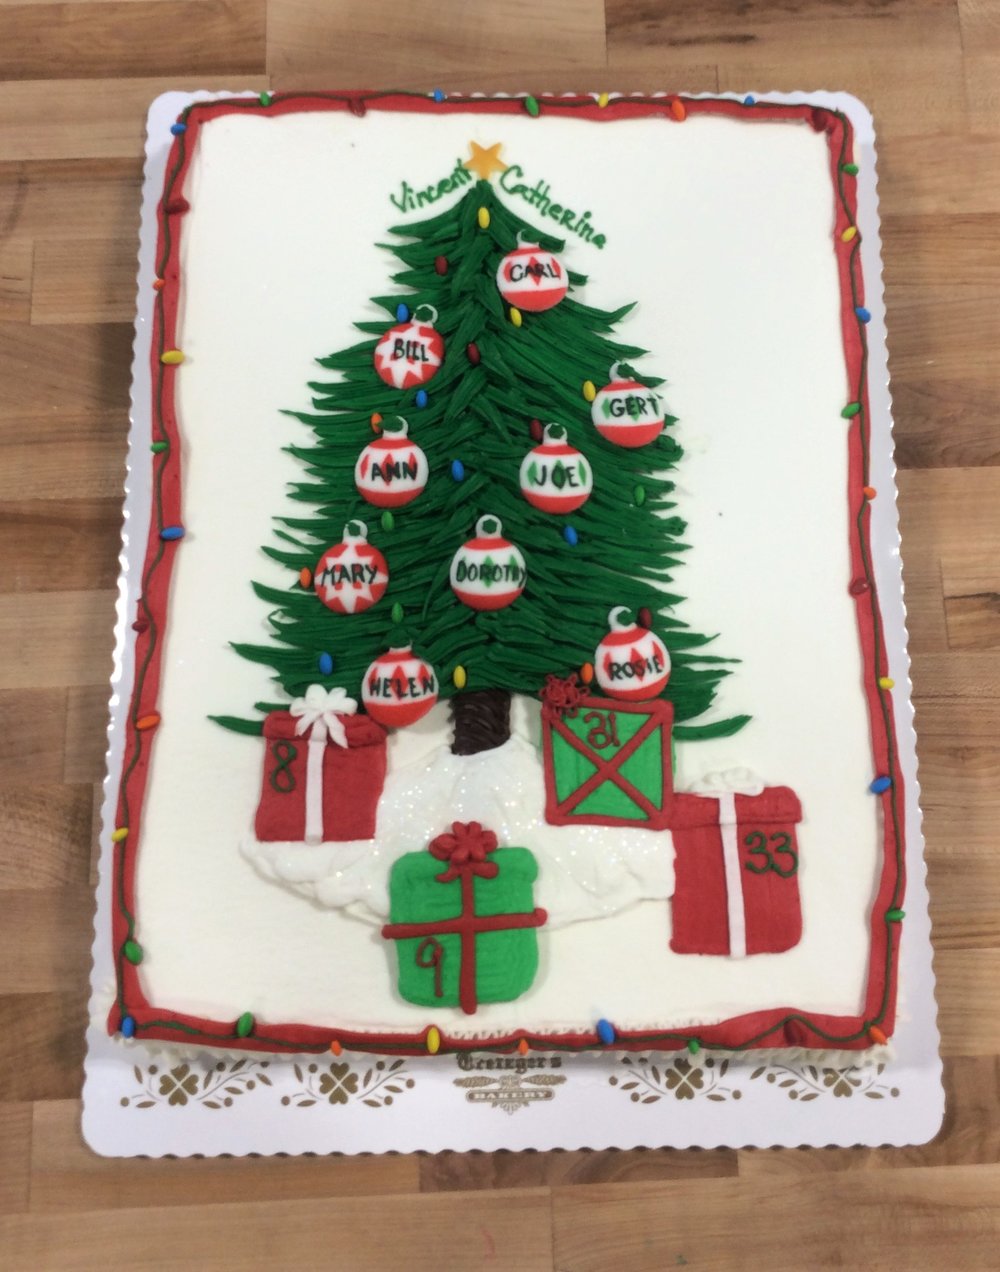 Christmas Tree Sheet Cake with Custom Ornaments — Trefzger's Bakery